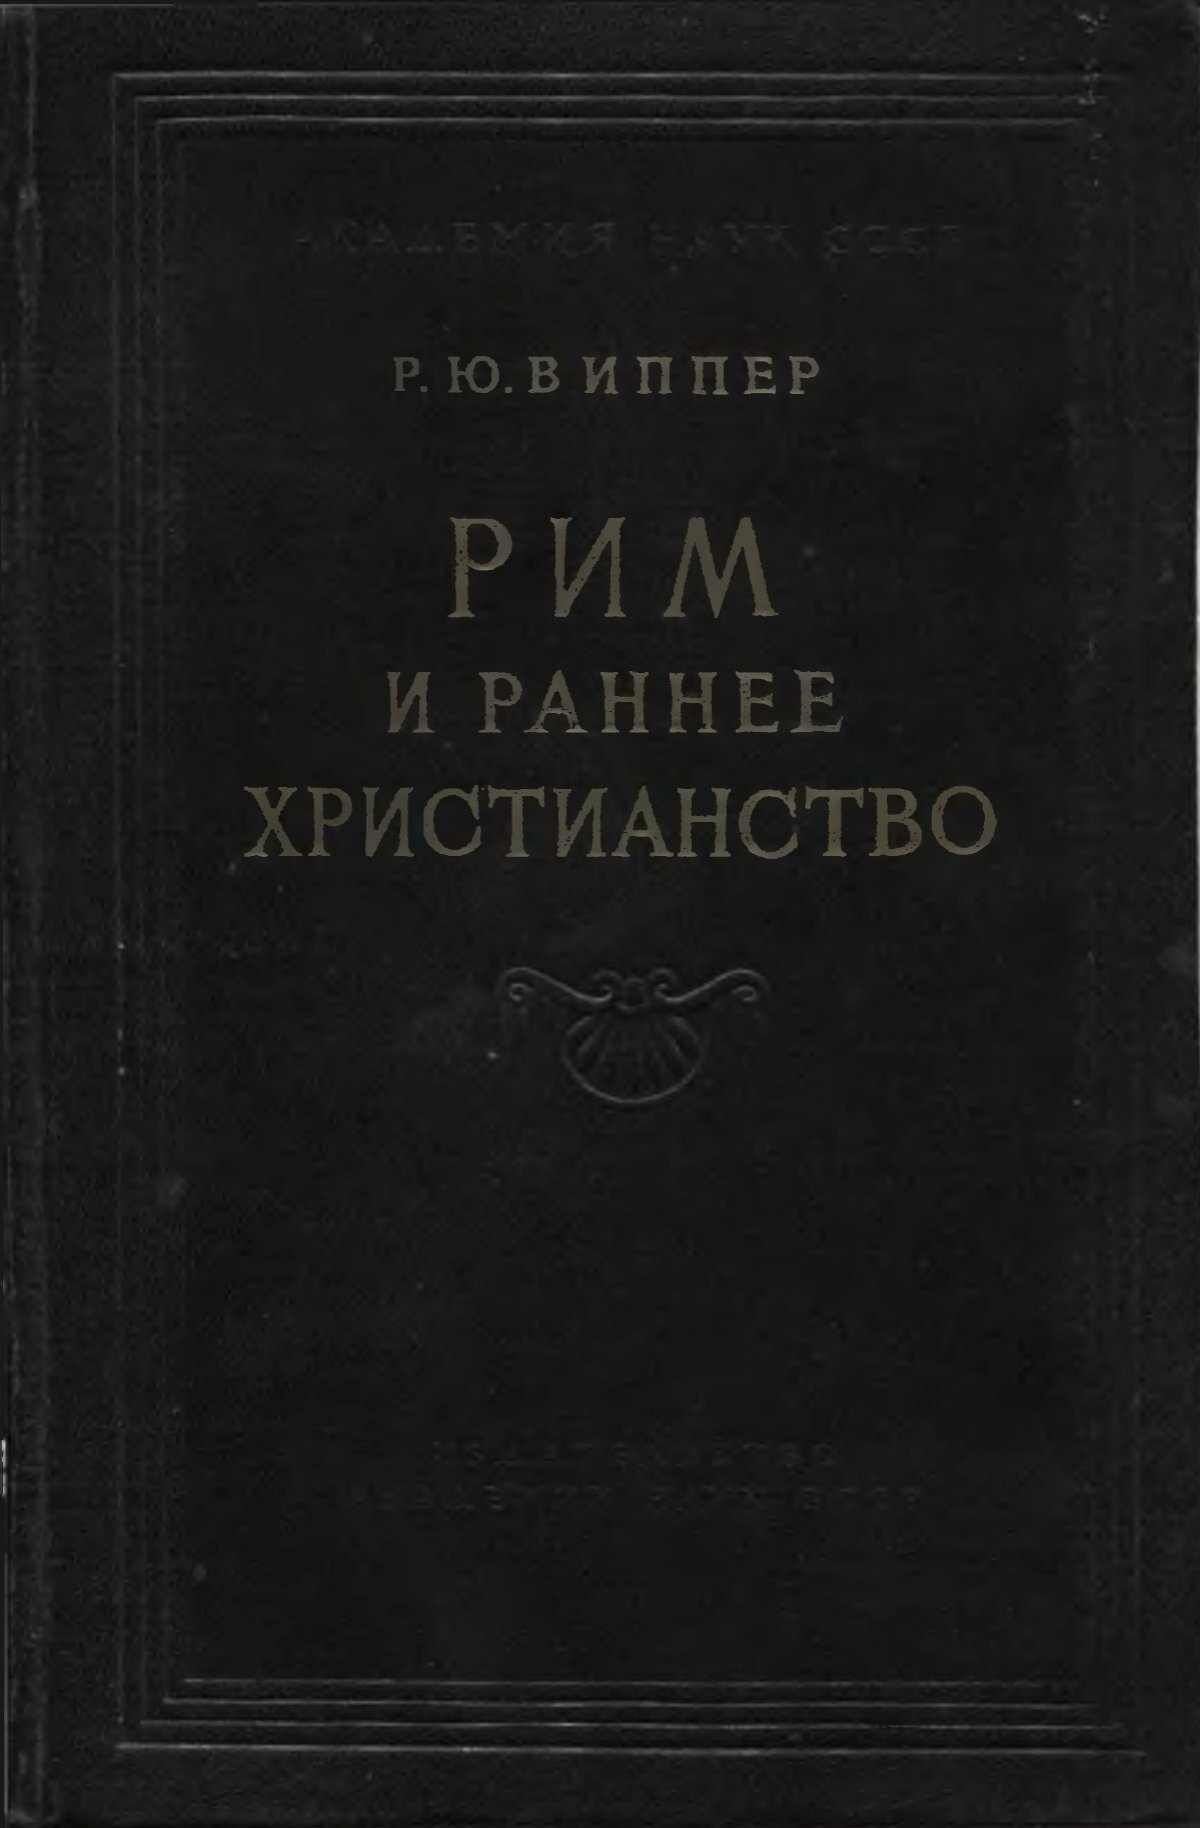 Сочинение по теме Религиозная лексика русского языка как выражение христианского мировоззрения